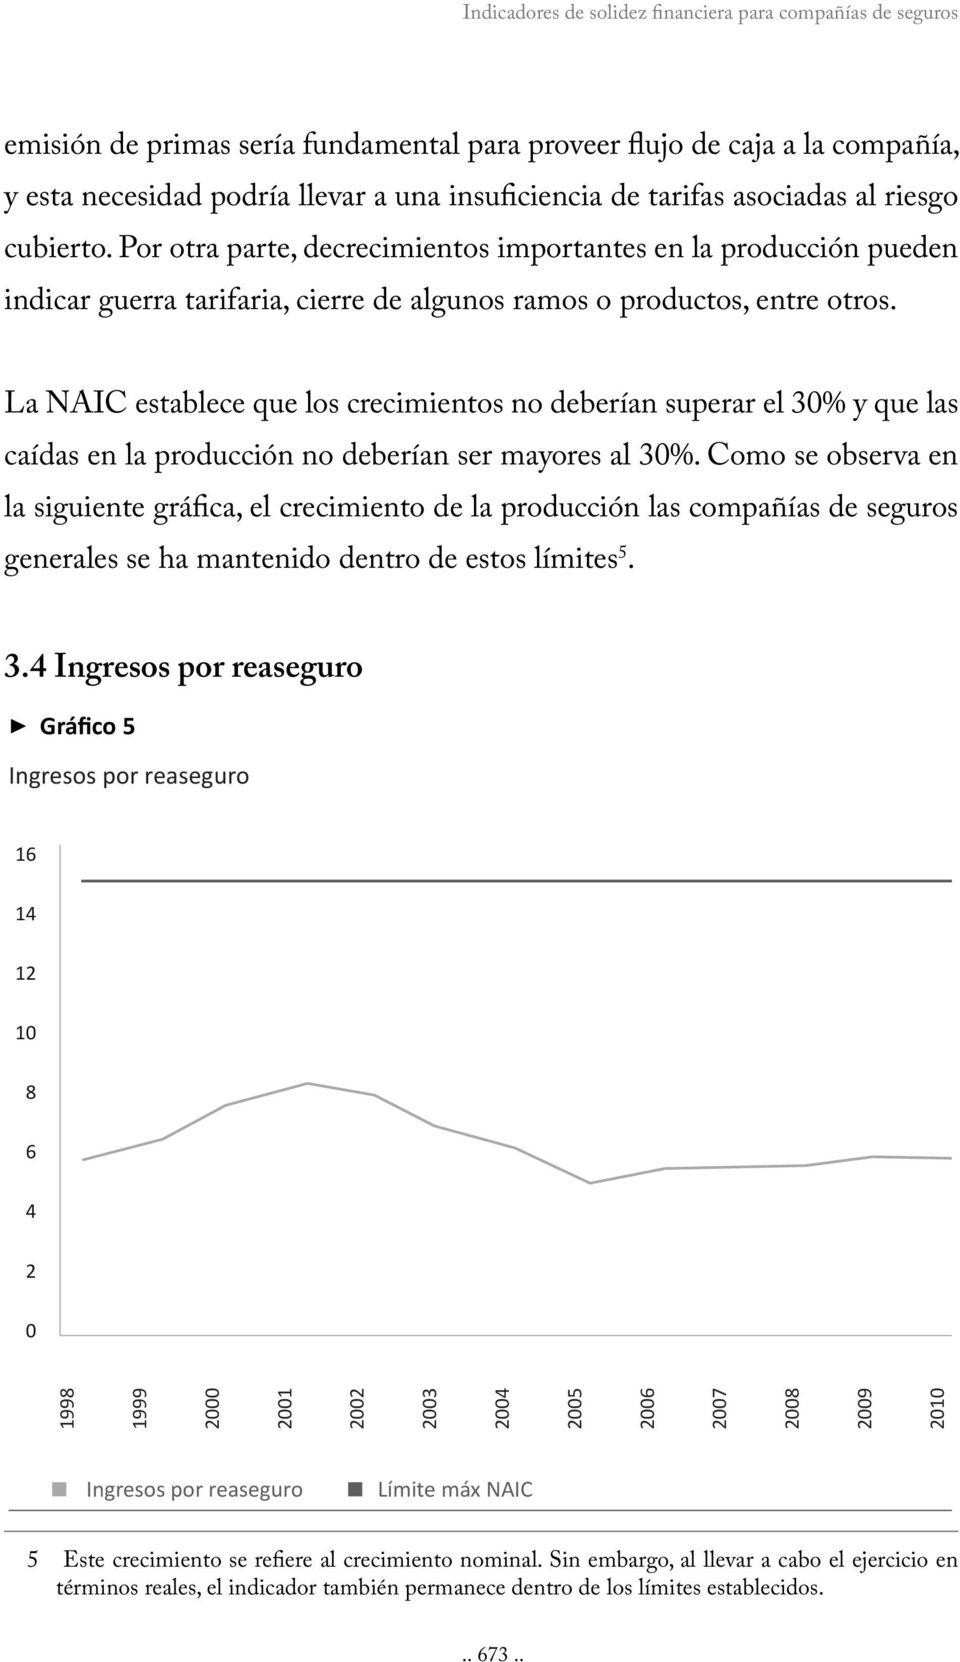 La NAIC establece que los crecimientos no deberían superar el 30% y que las caídas en la producción no deberían ser mayores al 30%.